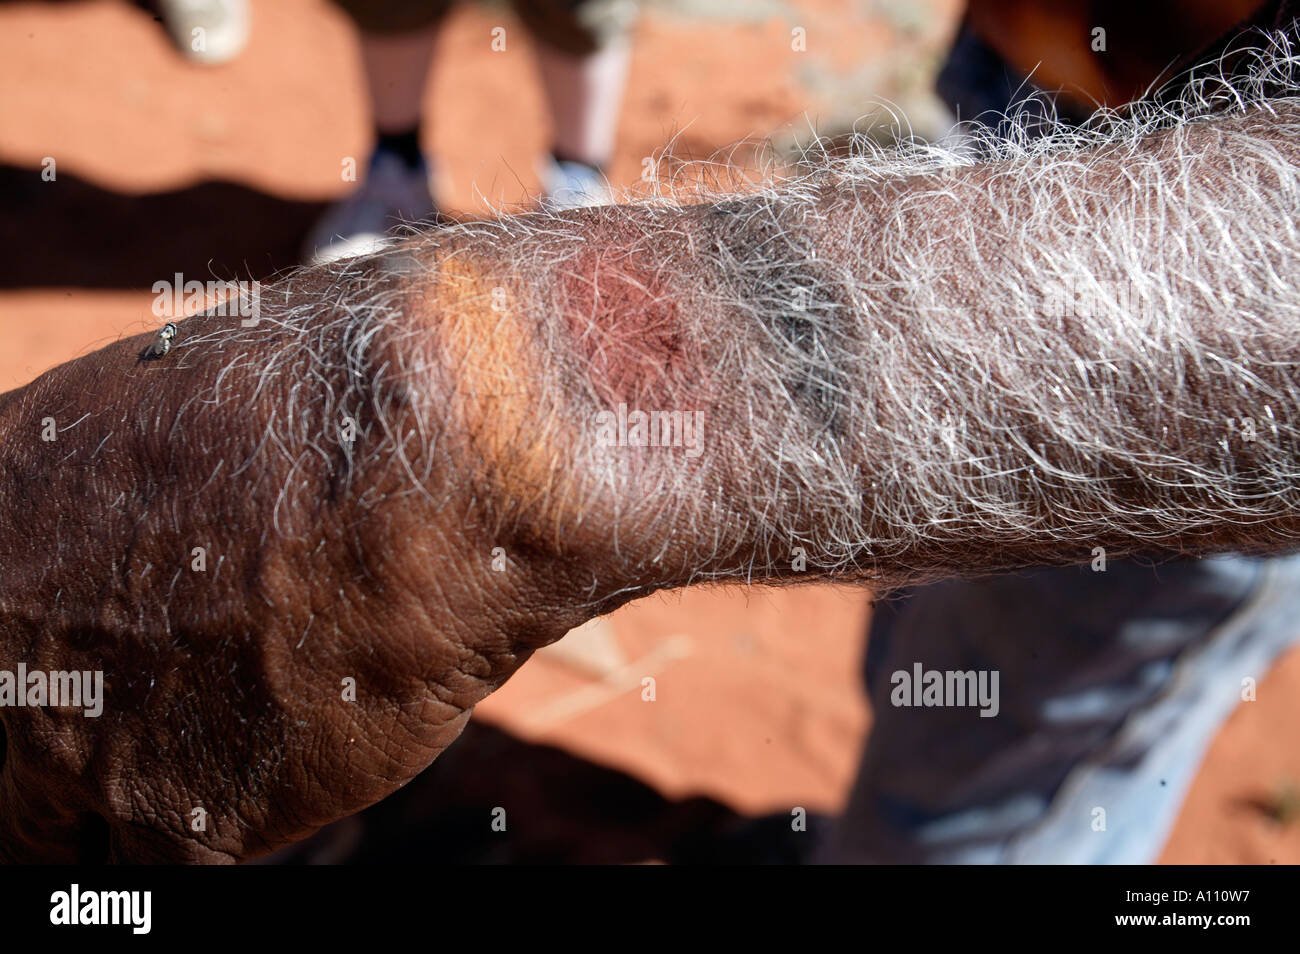 Une plante meurt naturelles autochtones montre sur son bras l'Australie du Sud terres Pitjantjara Anangu Banque D'Images